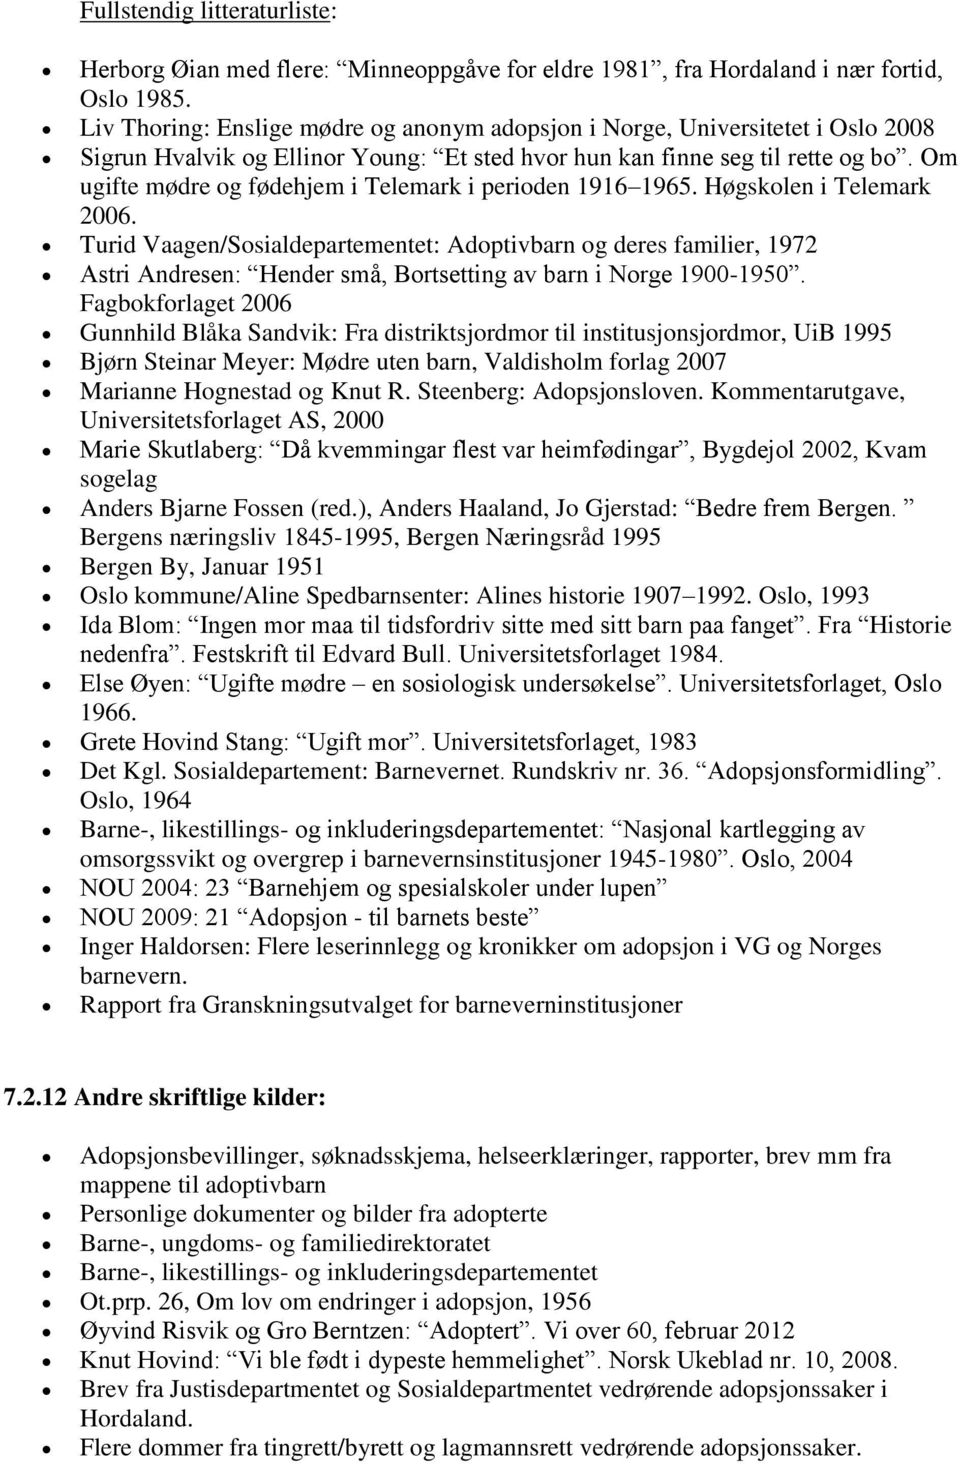 Om ugifte mødre g fødehjem i Telemark i periden 1916 1965. Høgsklen i Telemark 2006.